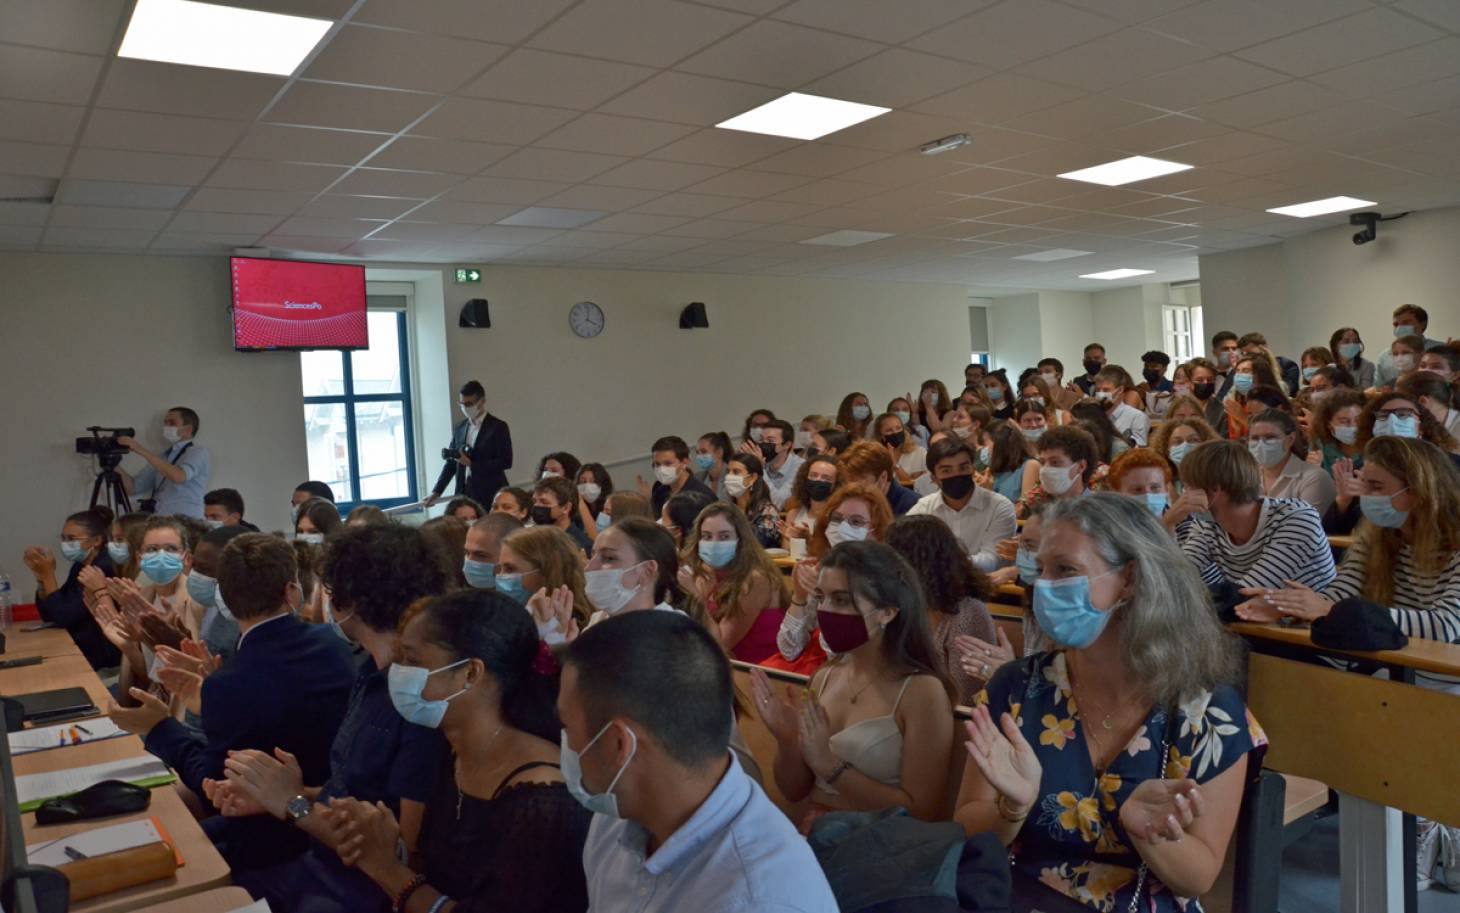 Sciences Po fête les 20 ans de son campus poitevin et accueille ses nouveaux étudiants